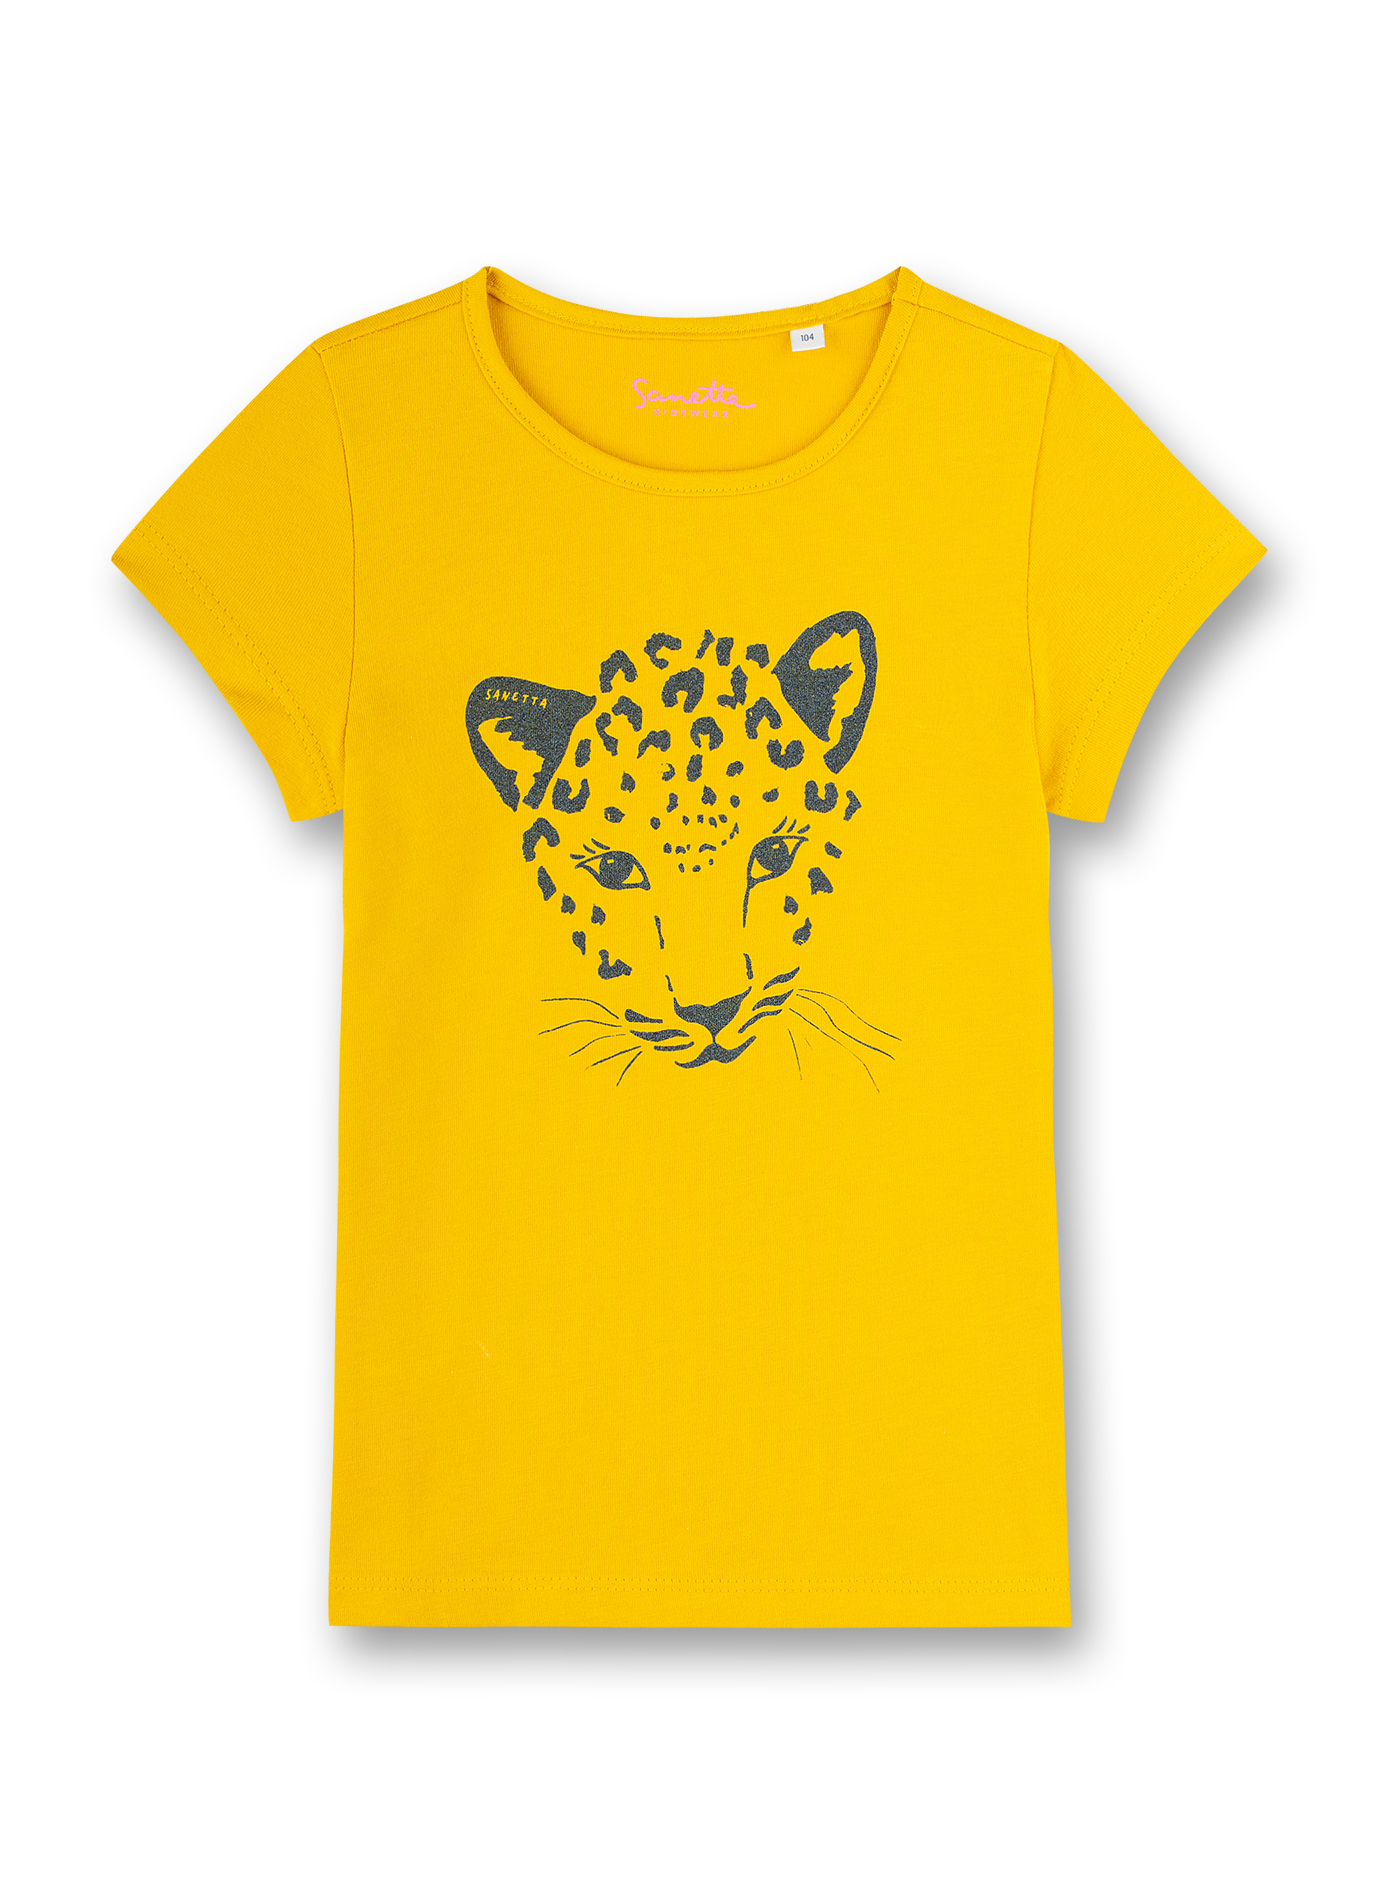 Mädchen T-Shirt Gelb Wild Cat